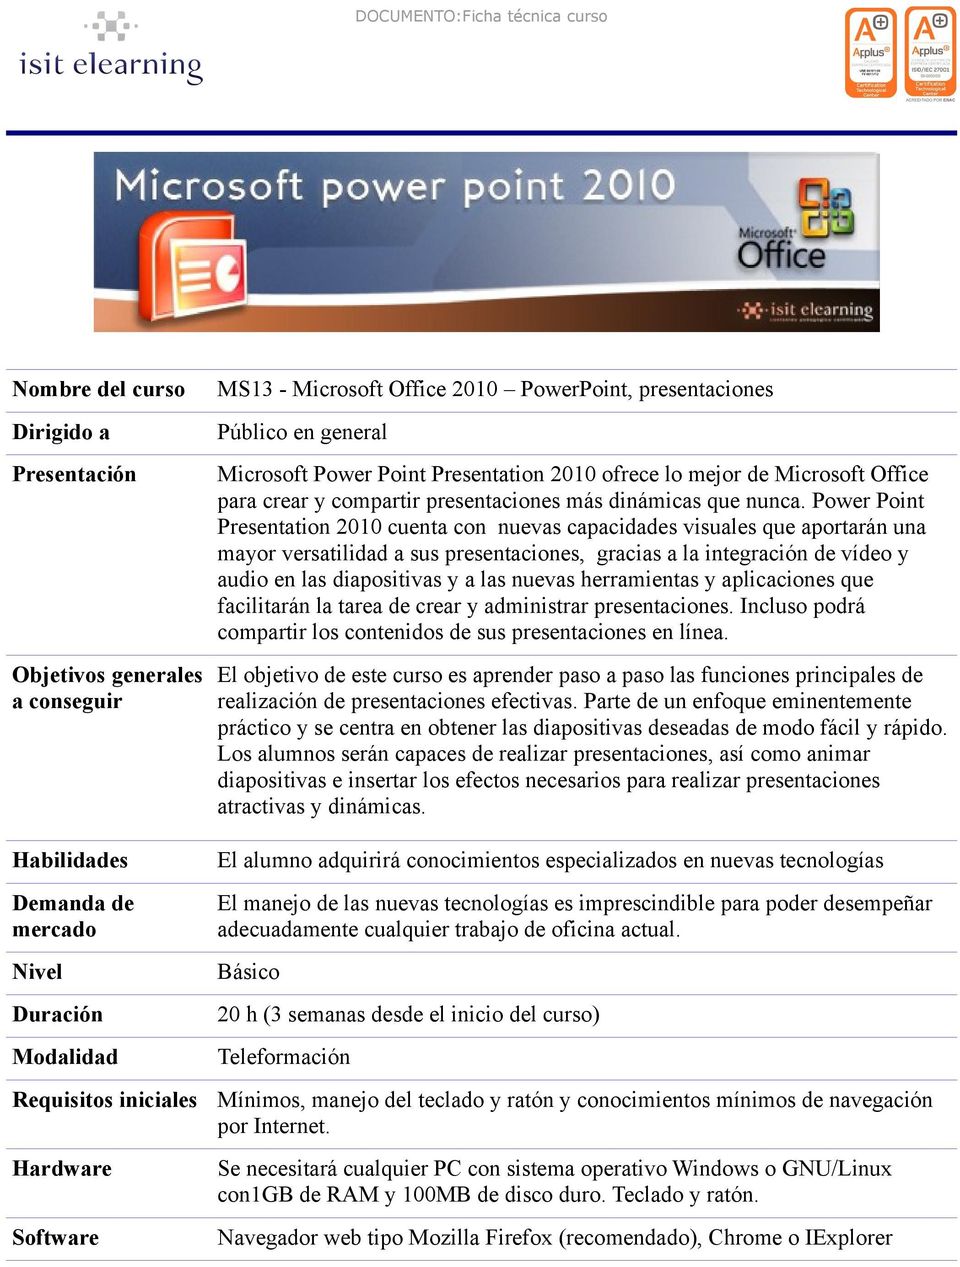 Power Point Presentation 2010 cuenta con nuevas capacidades visuales que aportarán una mayor versatilidad a sus presentaciones, gracias a la integración de vídeo y audio en las diapositivas y a las